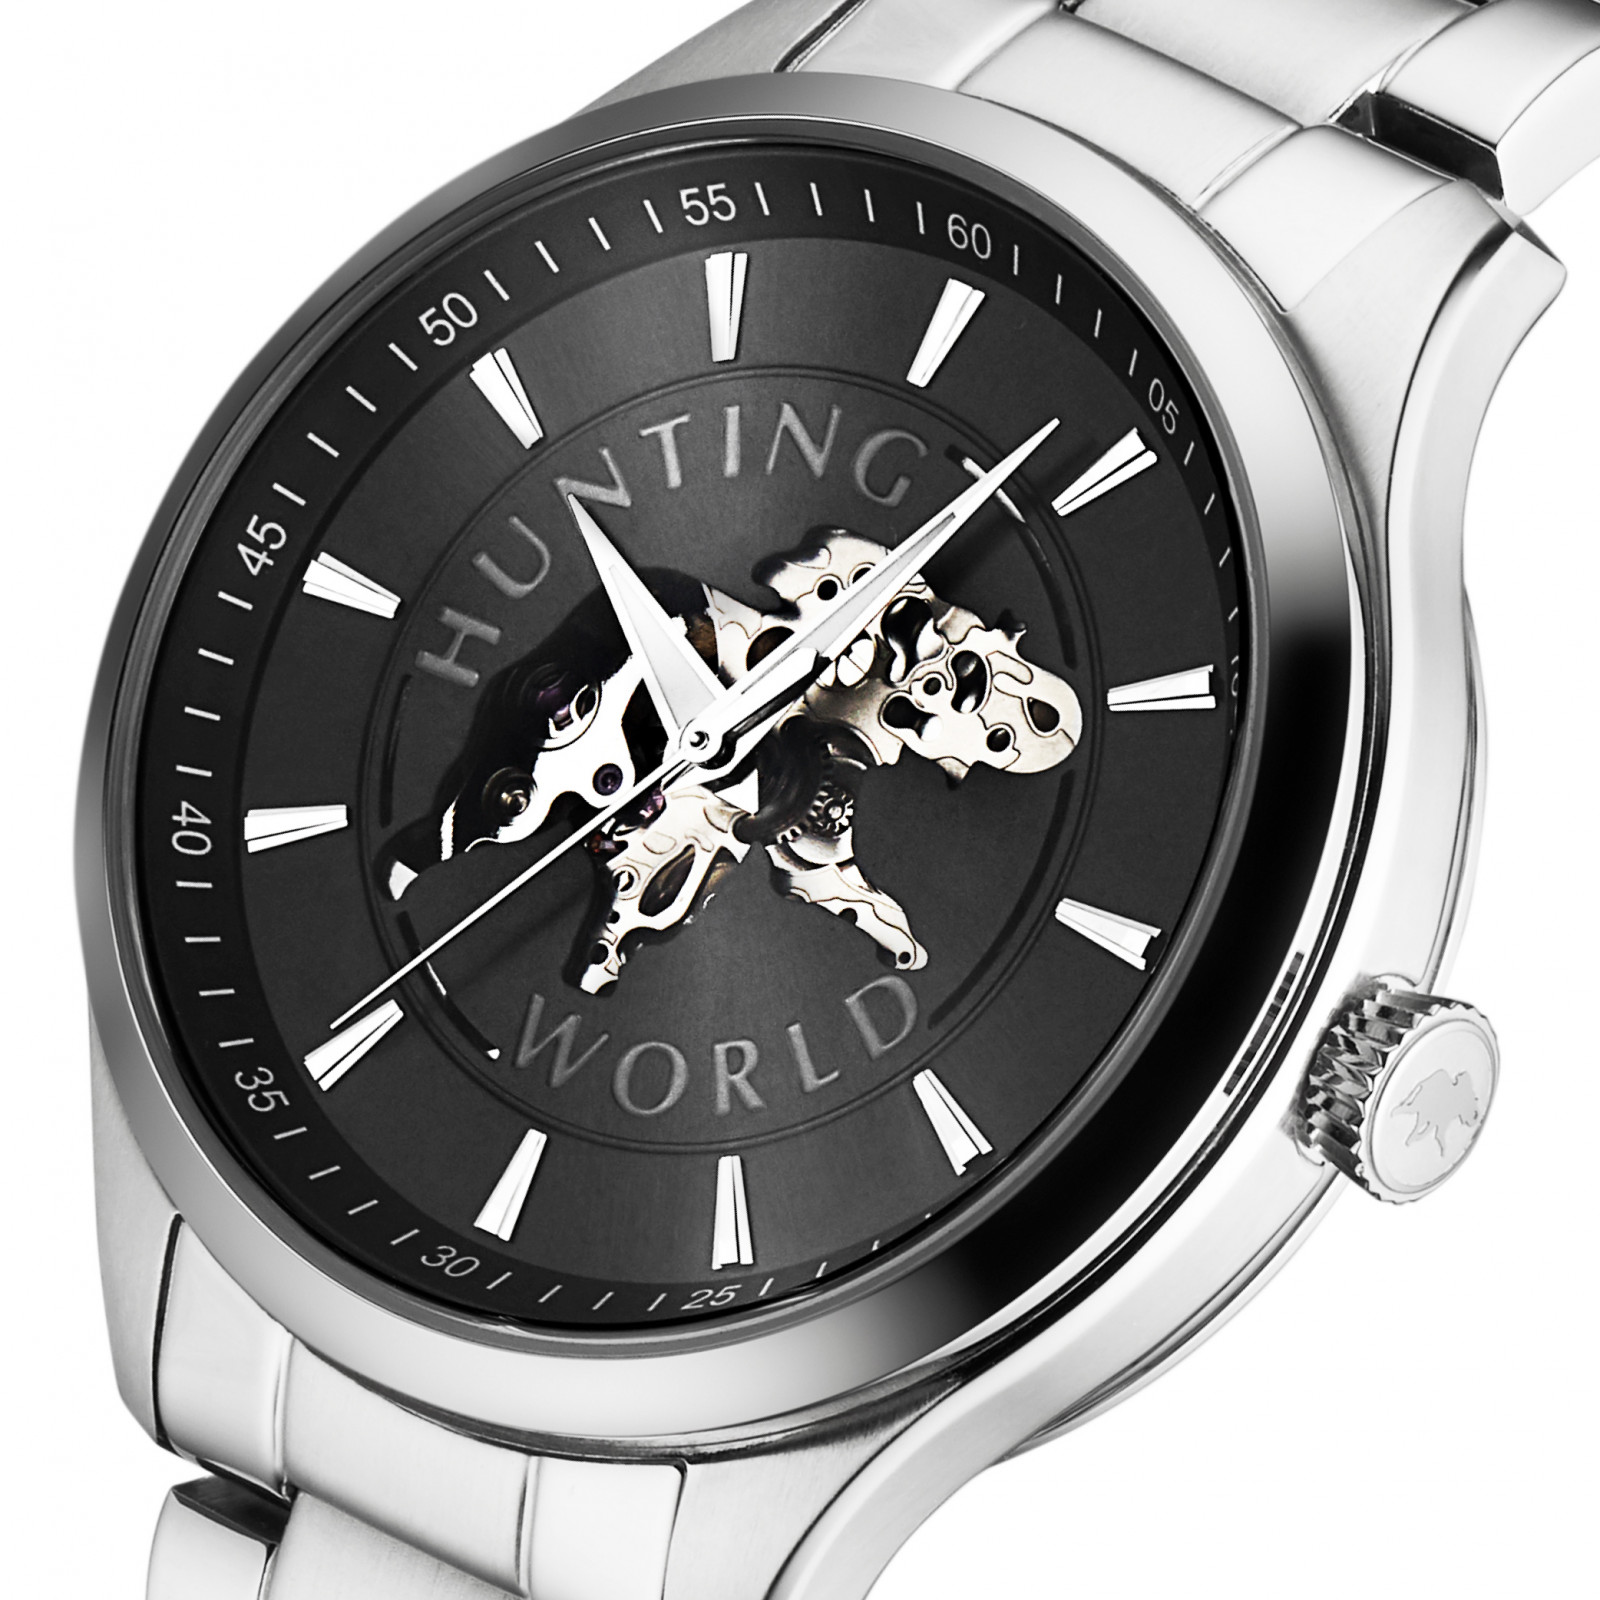 エレファントのシンボルマーク、ハンティング・ワールドの腕時計に黒い文字盤の限定モデルが登場 | FASHION | FASHION HEADLINE